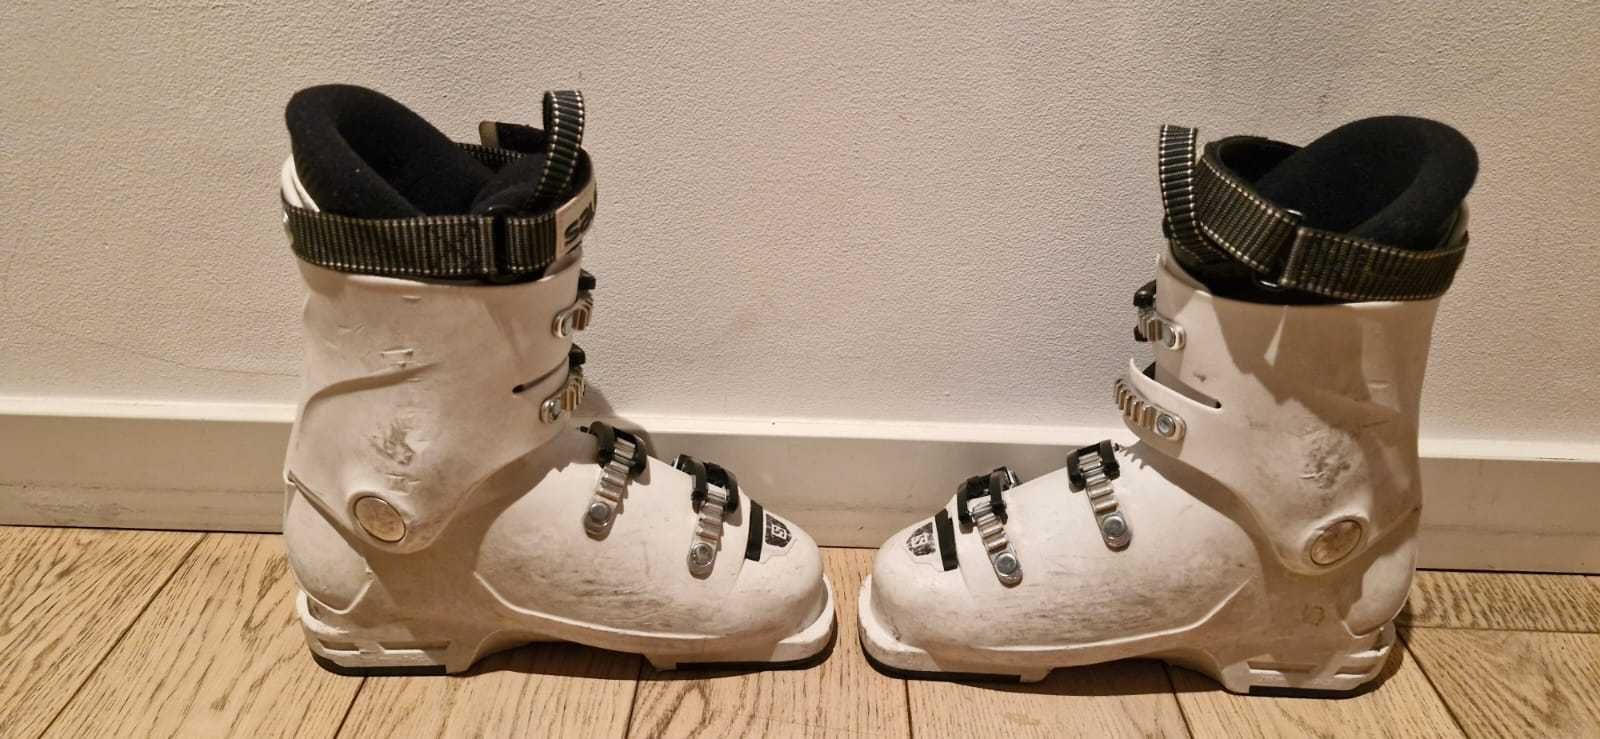 Buty narciarskie dziecięce Salomon roz. 24 - 24,5 cm